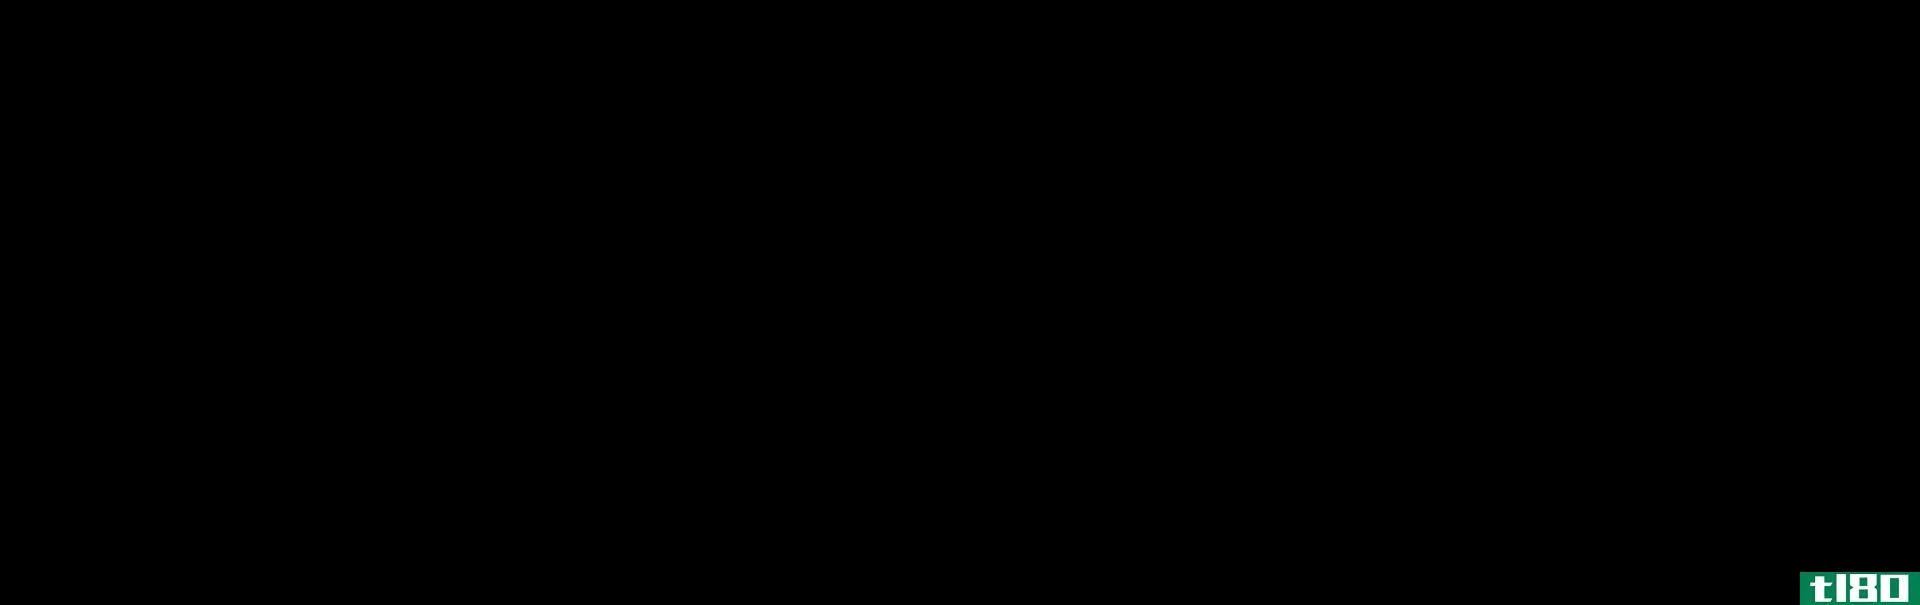 十六醇(cetyl alcohol)和十六醇(cetearyl alcohol)的区别